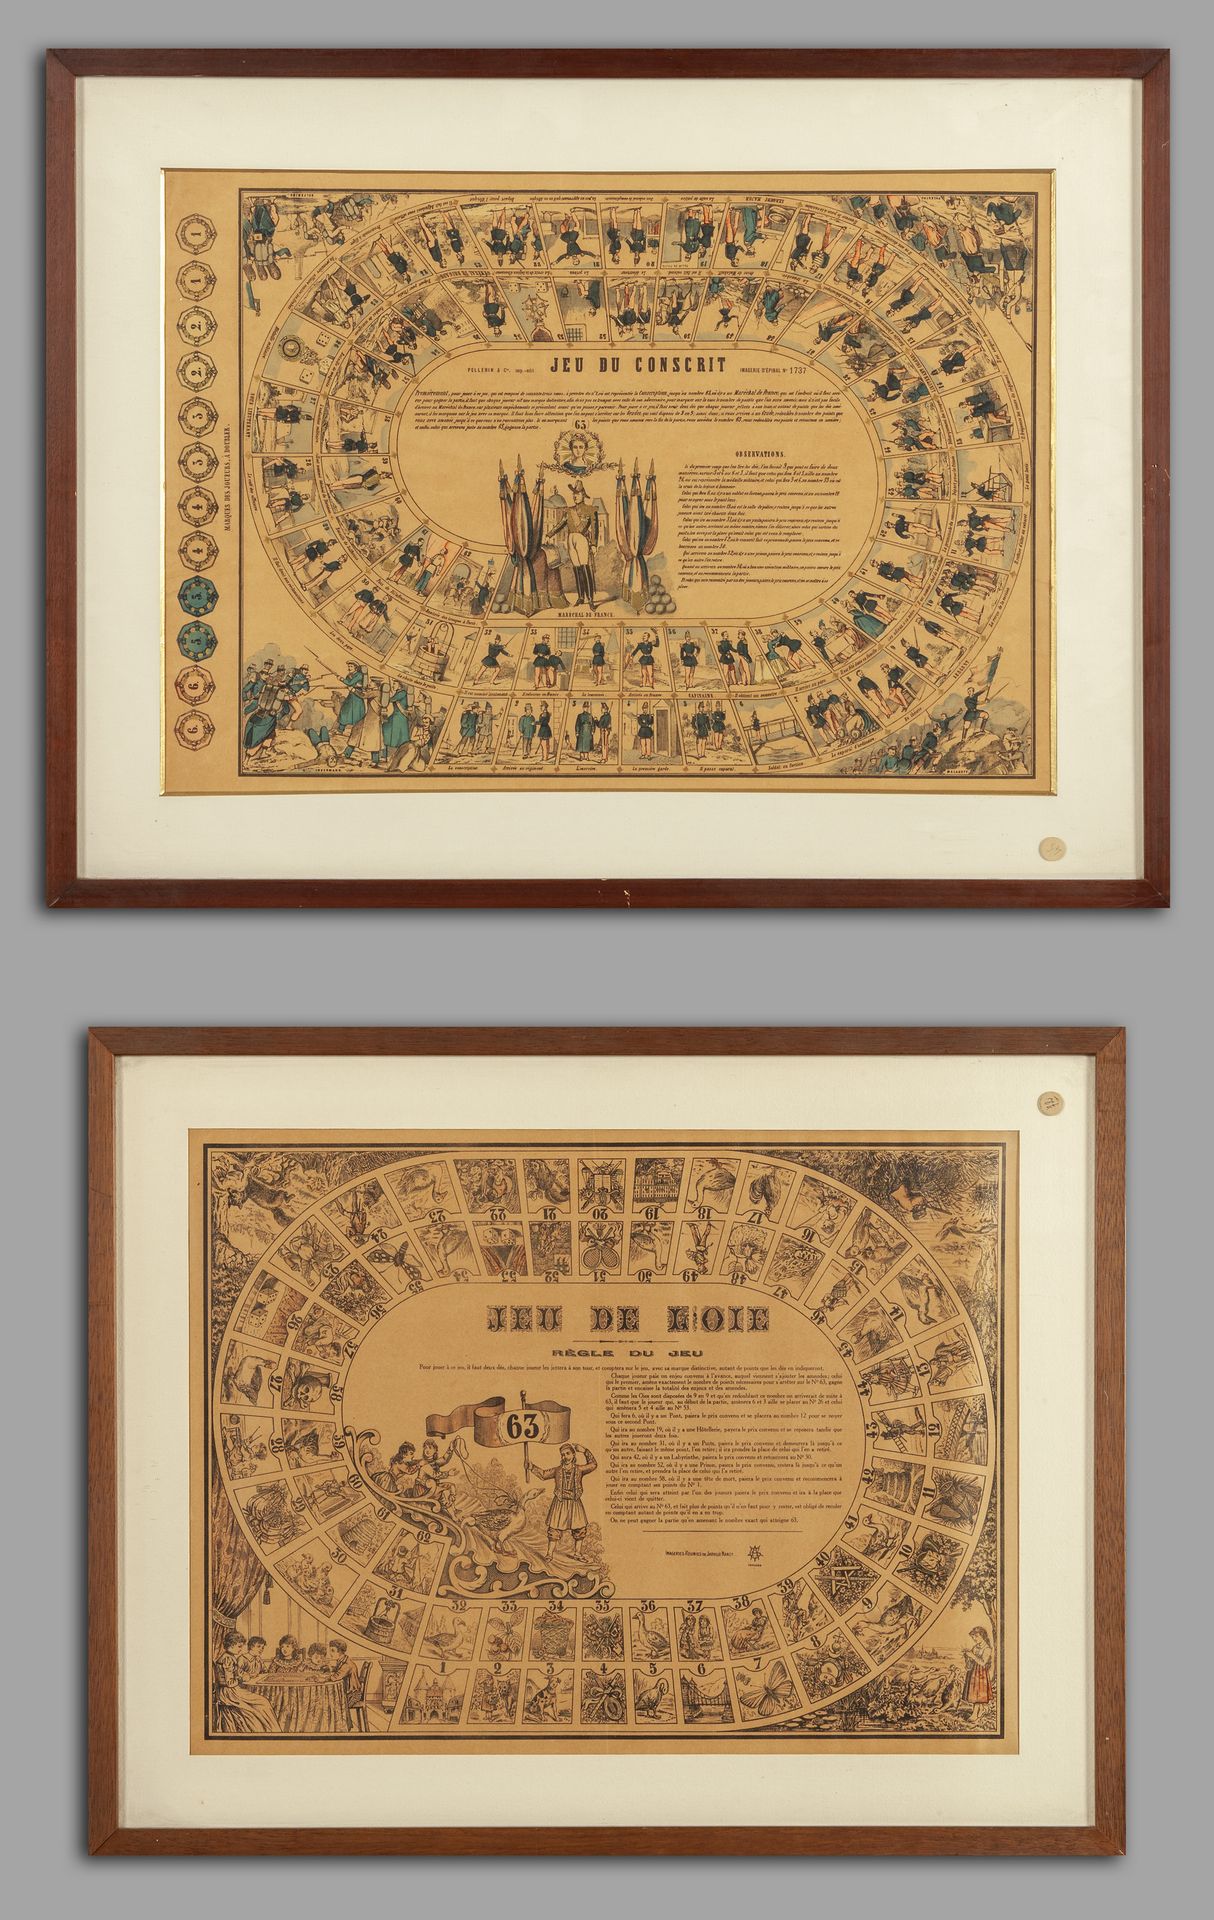 OGGETTISTICA Jeu du conscrit et Jeu de l'oie deux gravures 19ème siècle